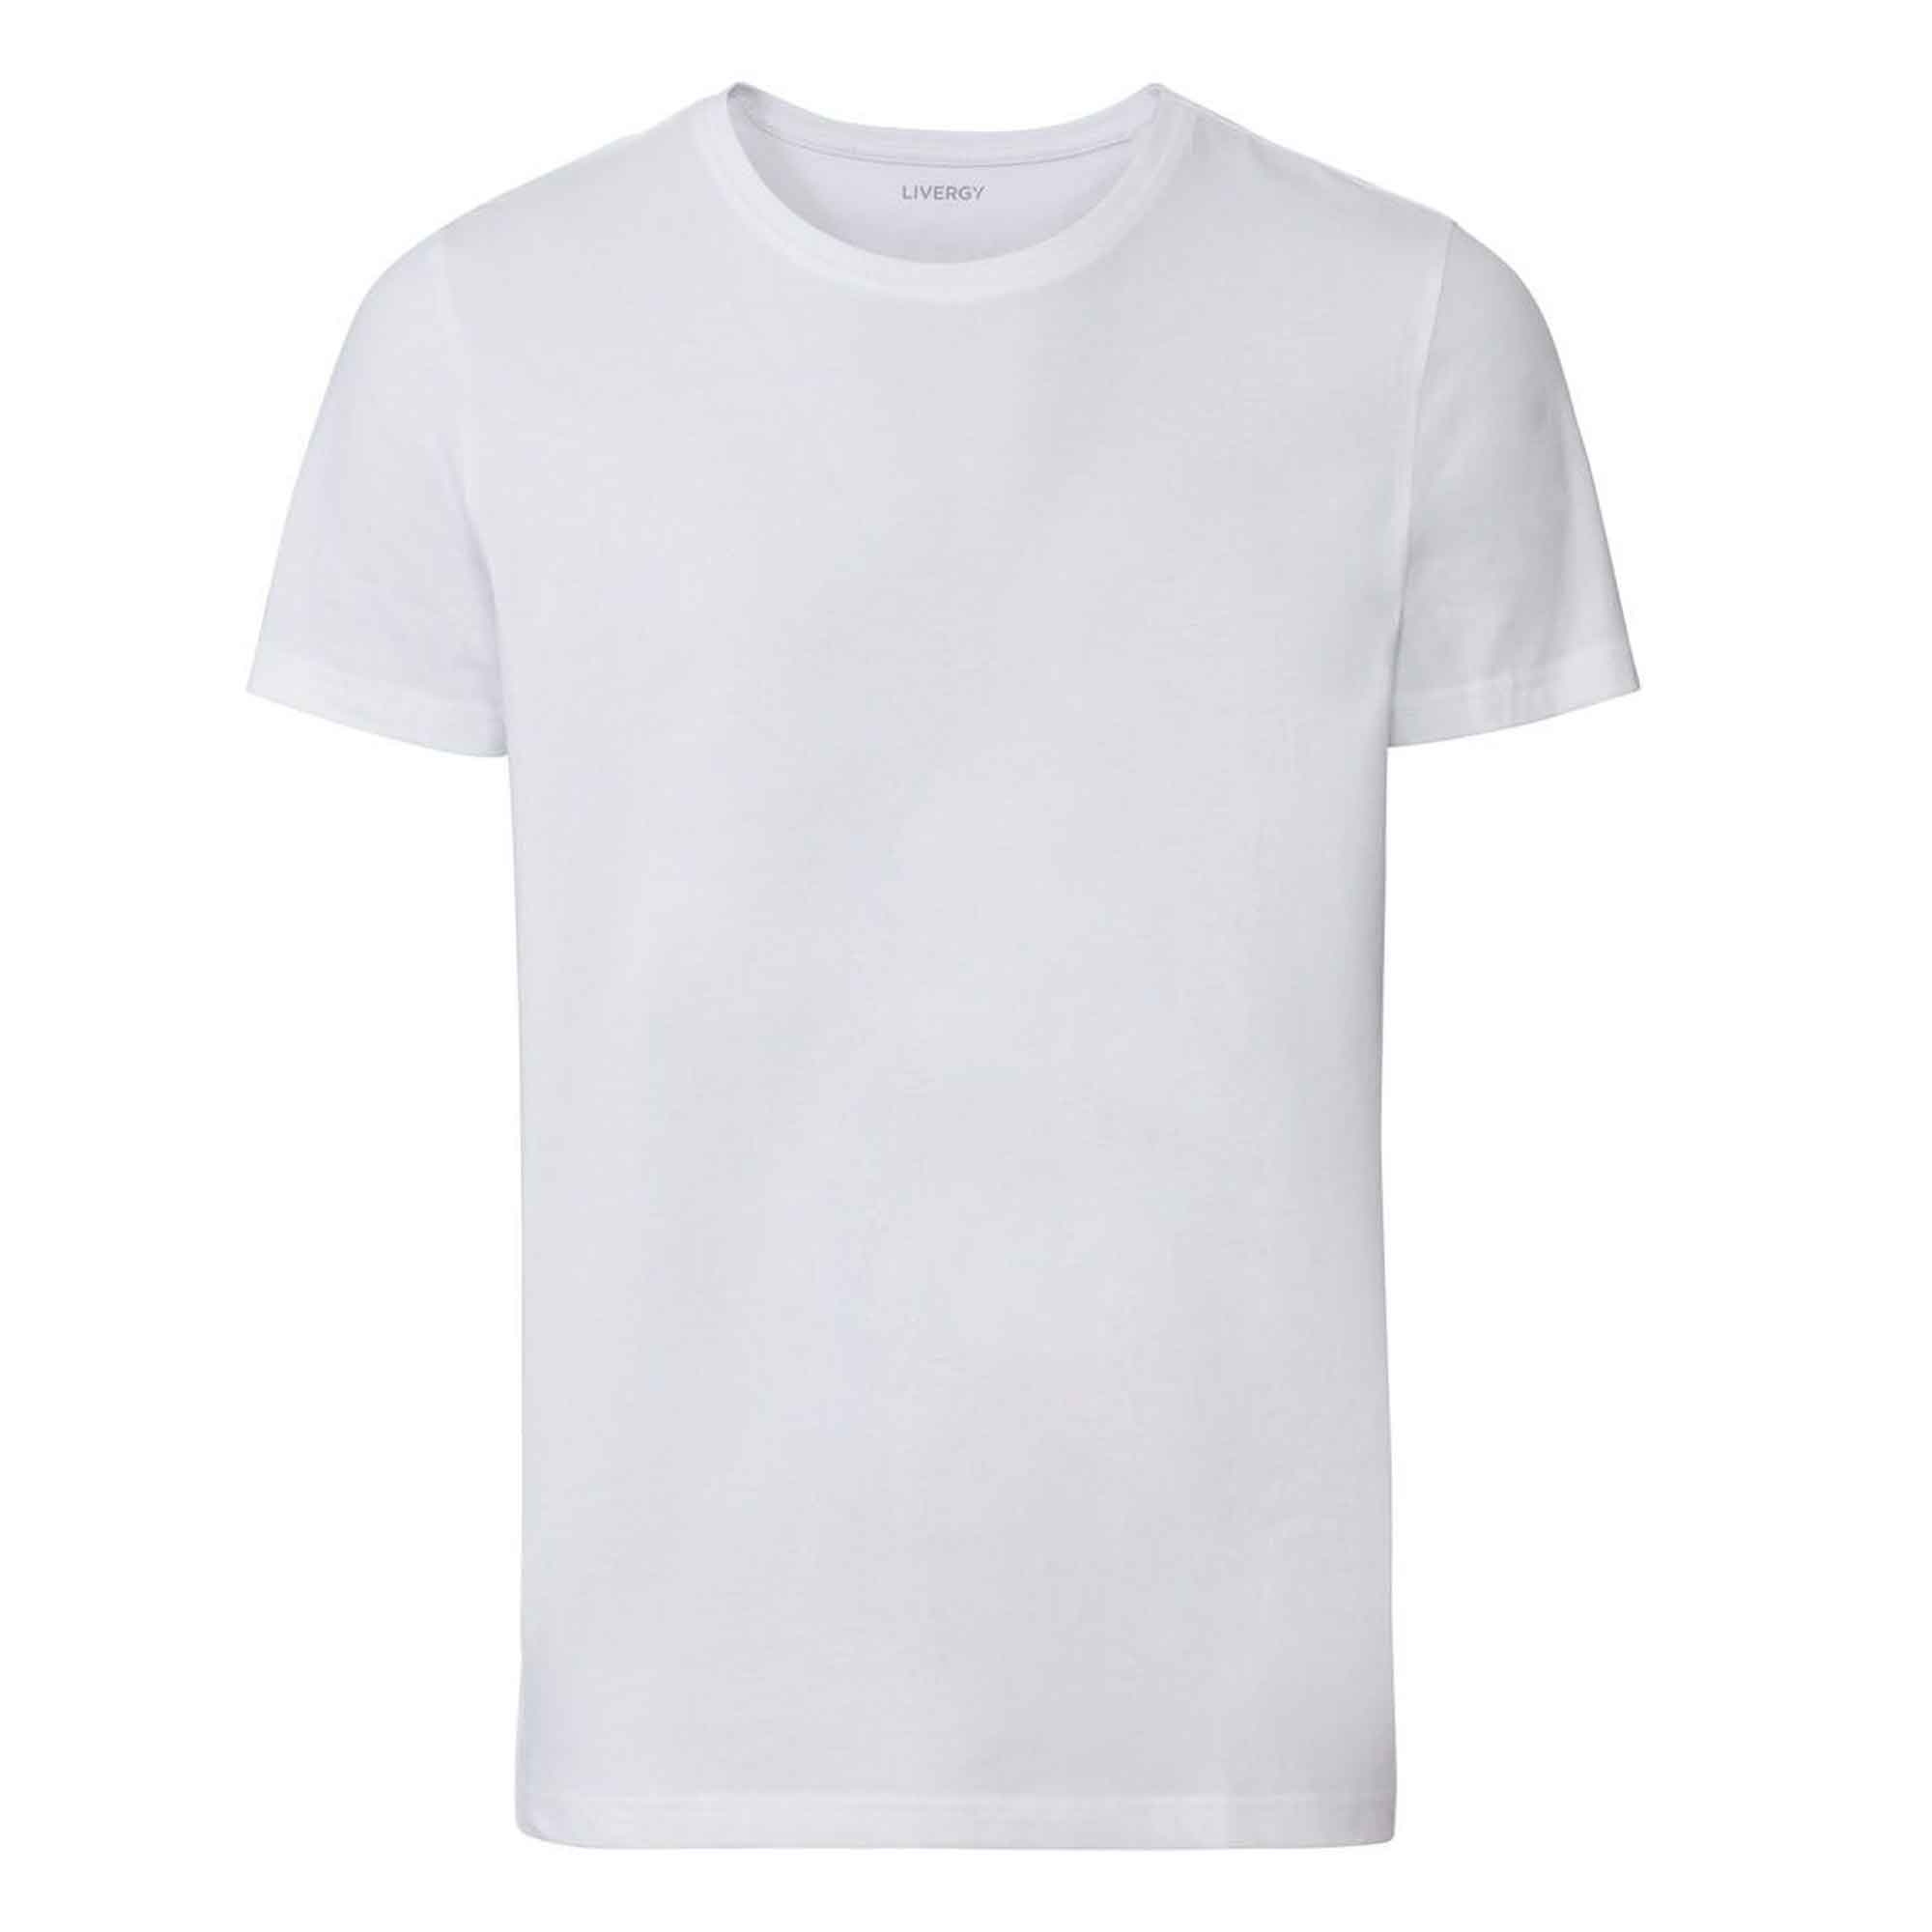 تی شرت مردانه لیورجی مدل 1904 -318700